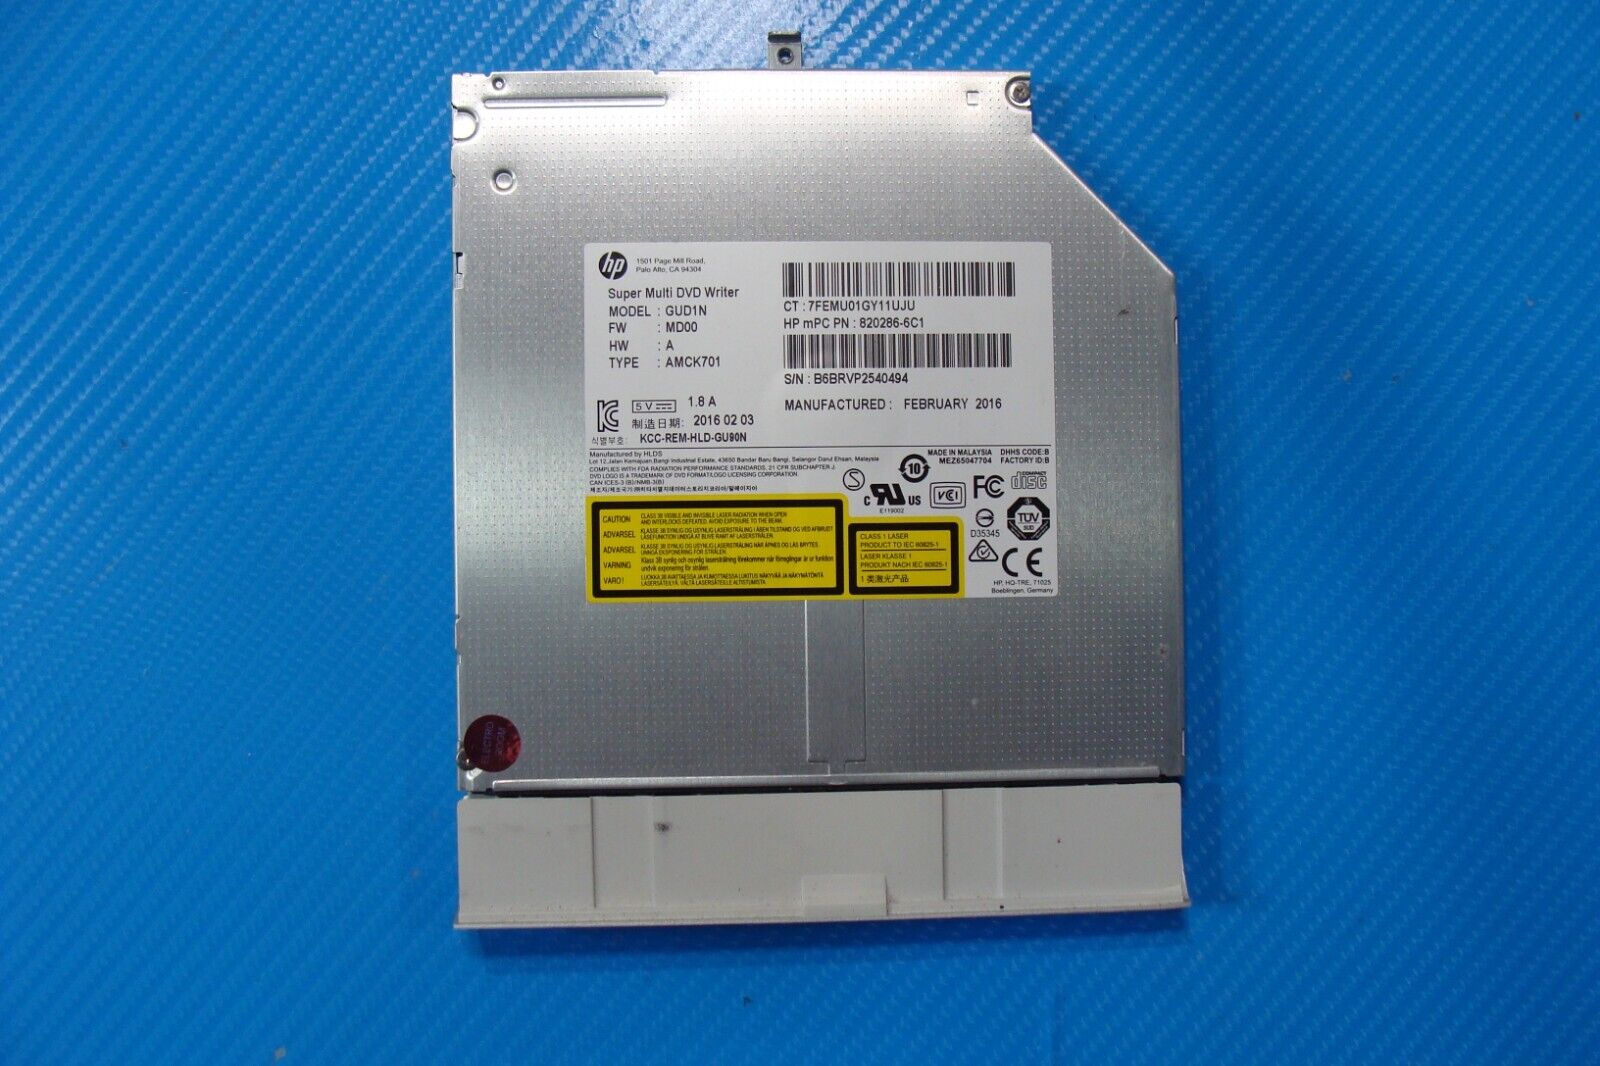 HP Envy 17.3” m7-u109dx OEM Laptop Super Multi DVD Burner Drive GUD1N 820286-6C1